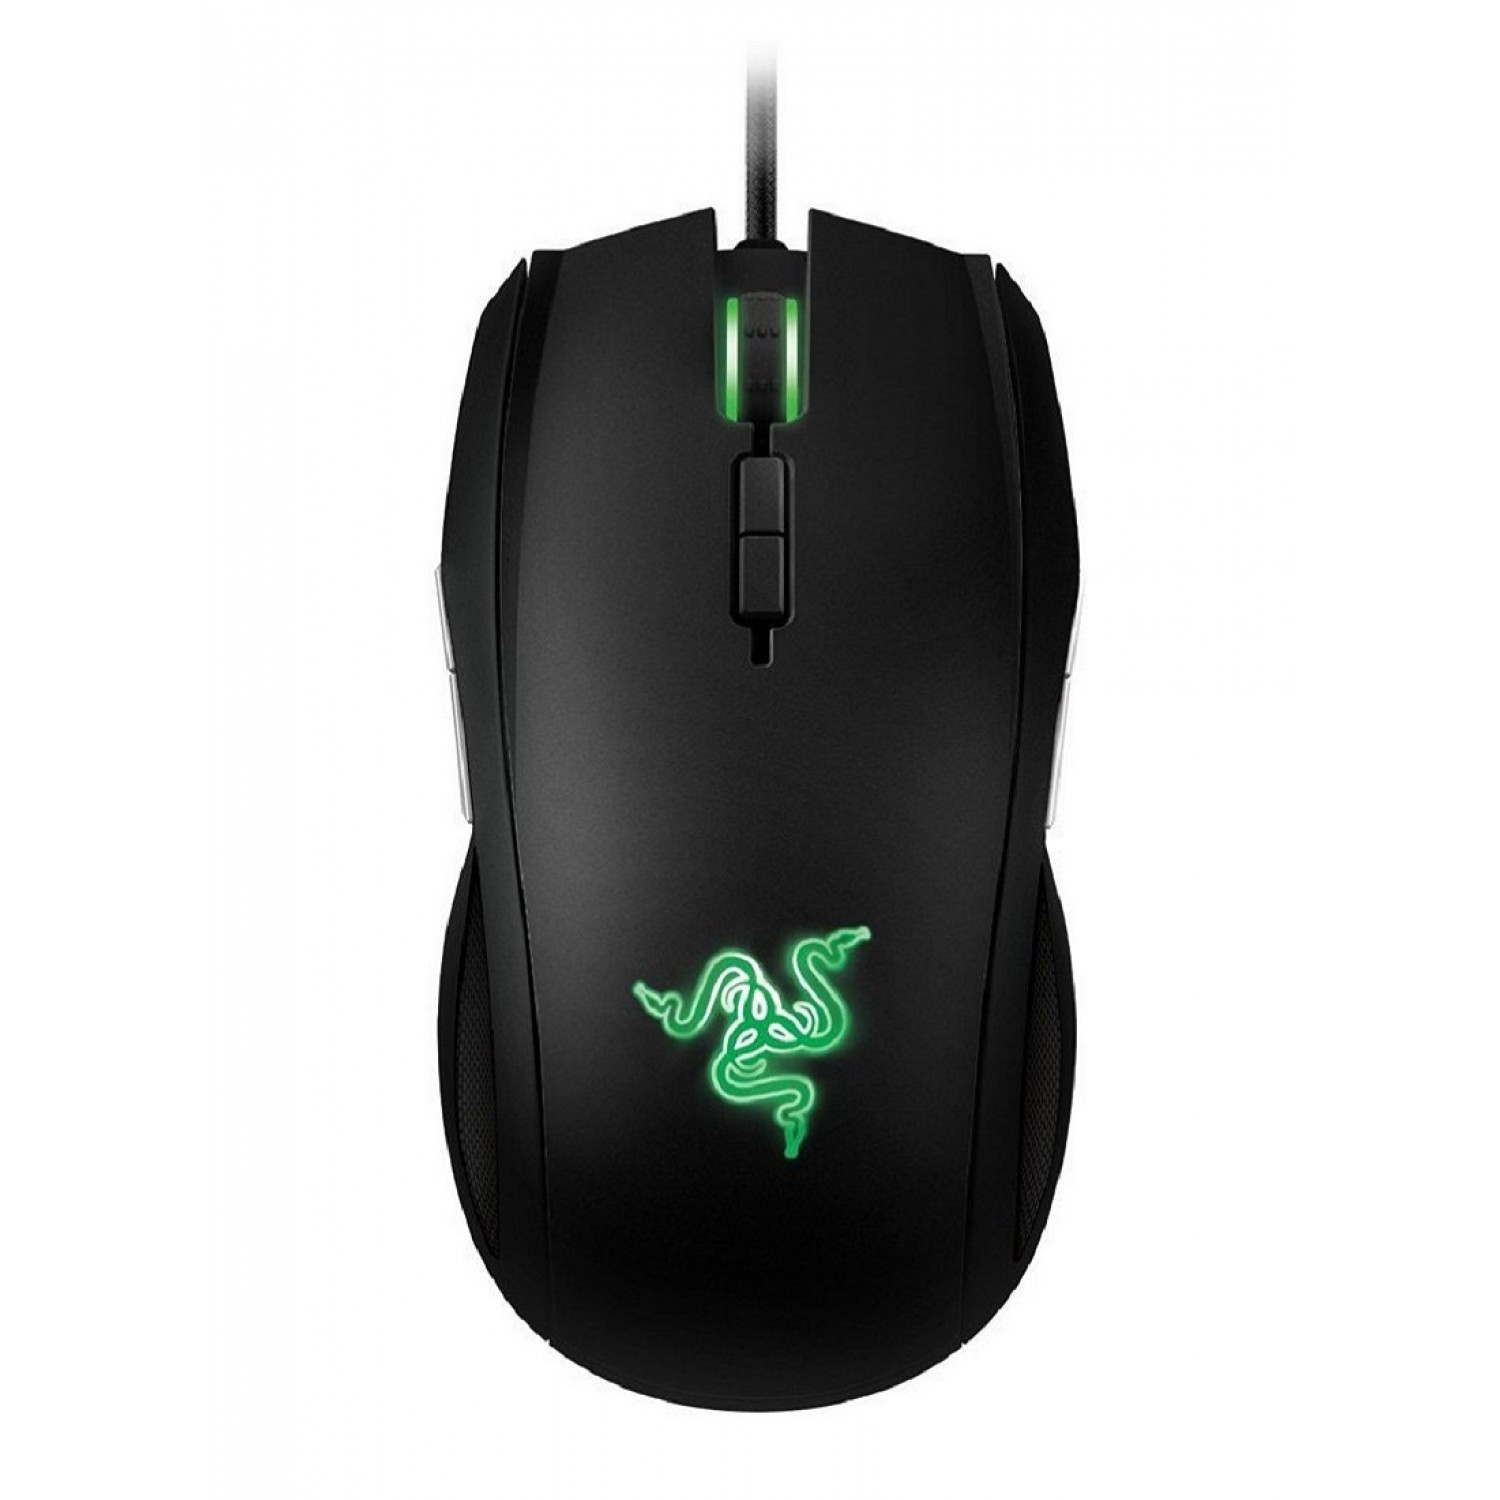 Razer Taipan Ambidextrous Black Gaming Mouse